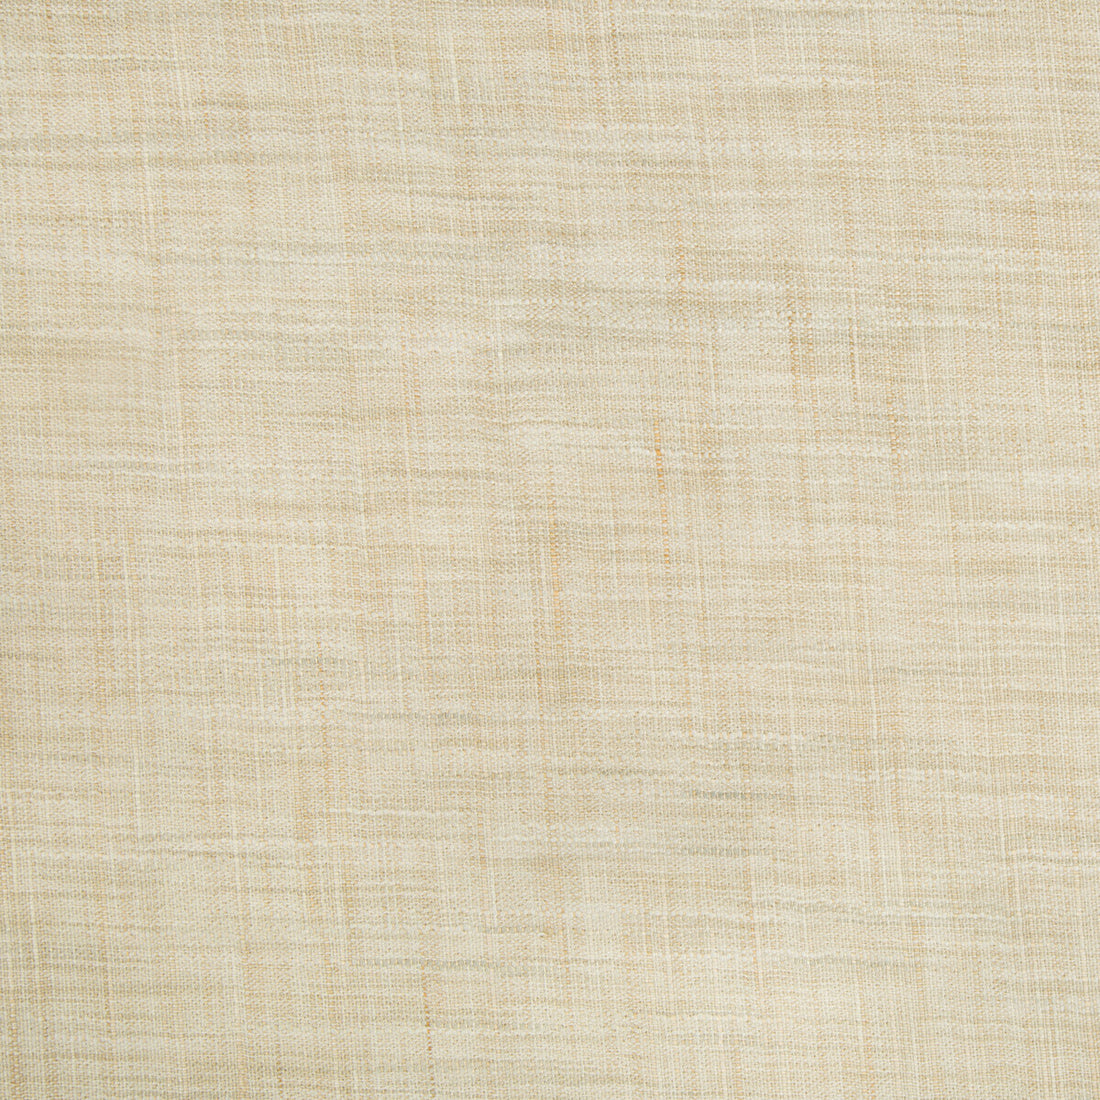 Kravet Basics fabric in 8813-1016 color - pattern 8813.1016.0 - by Kravet Basics